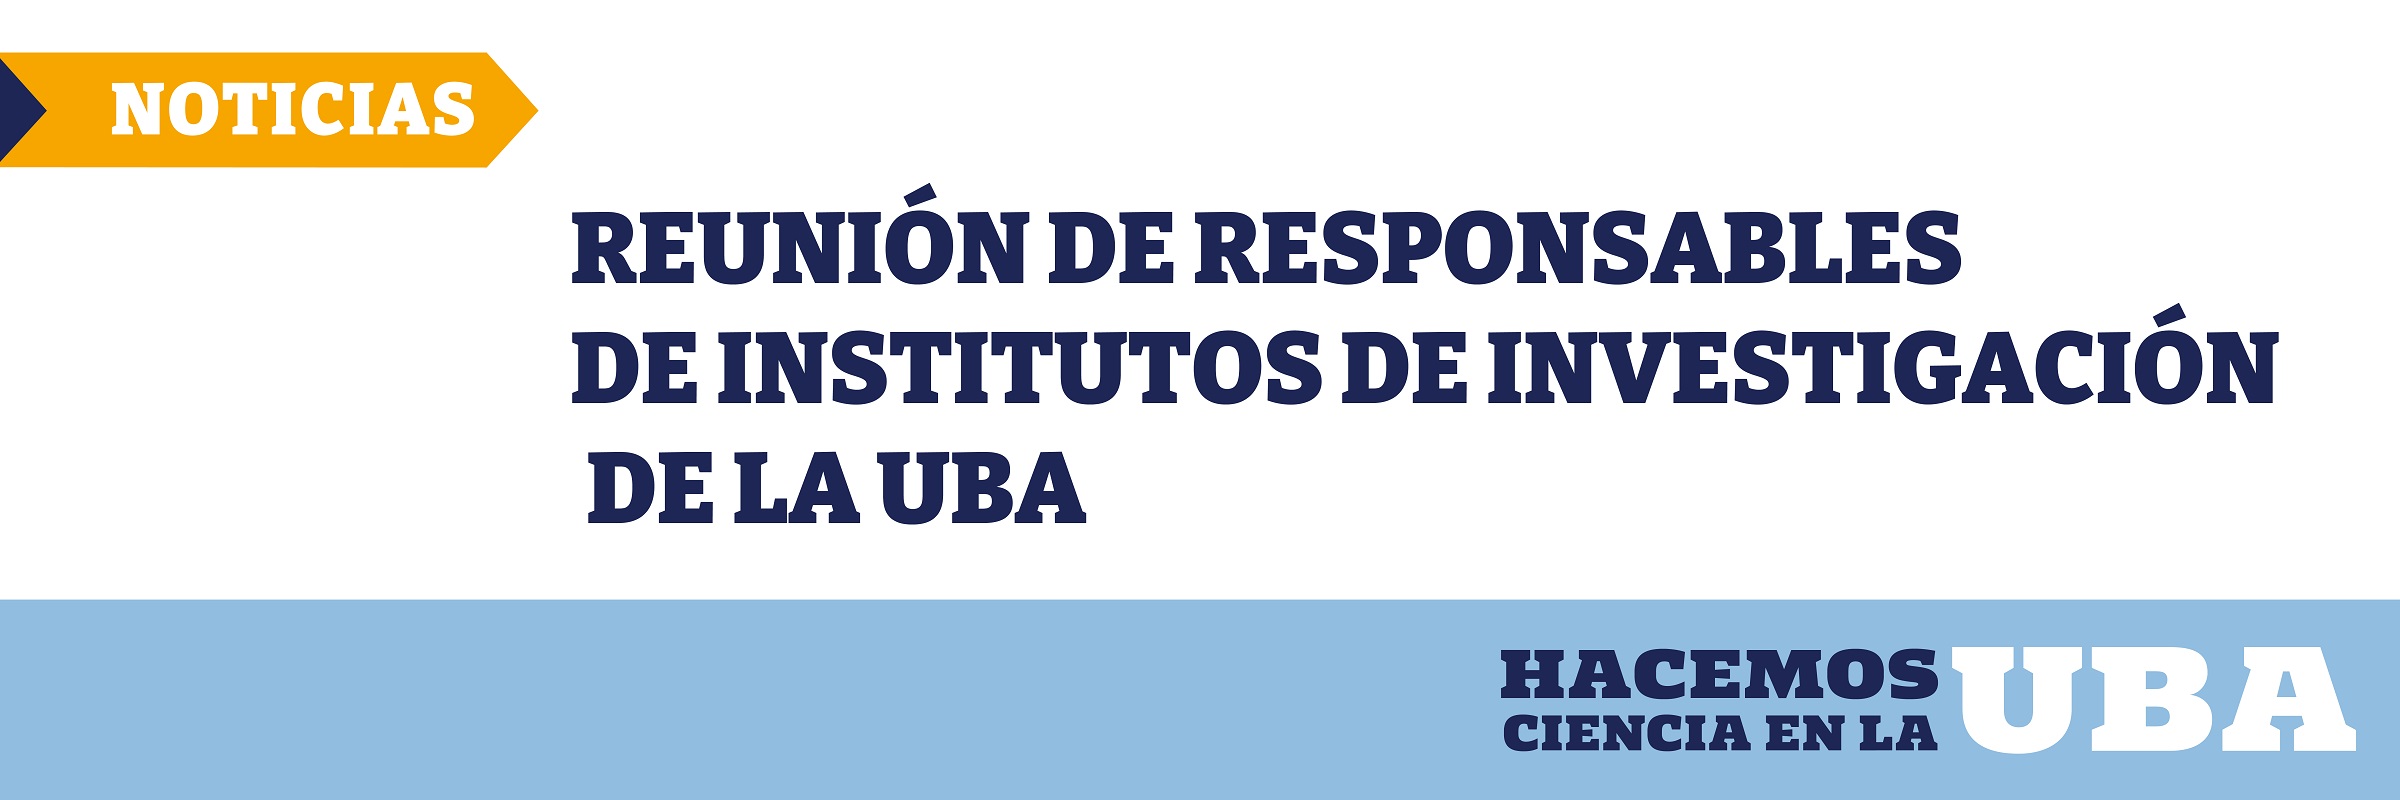 Reunión de responsables de Institutos de Investigación de la UBA